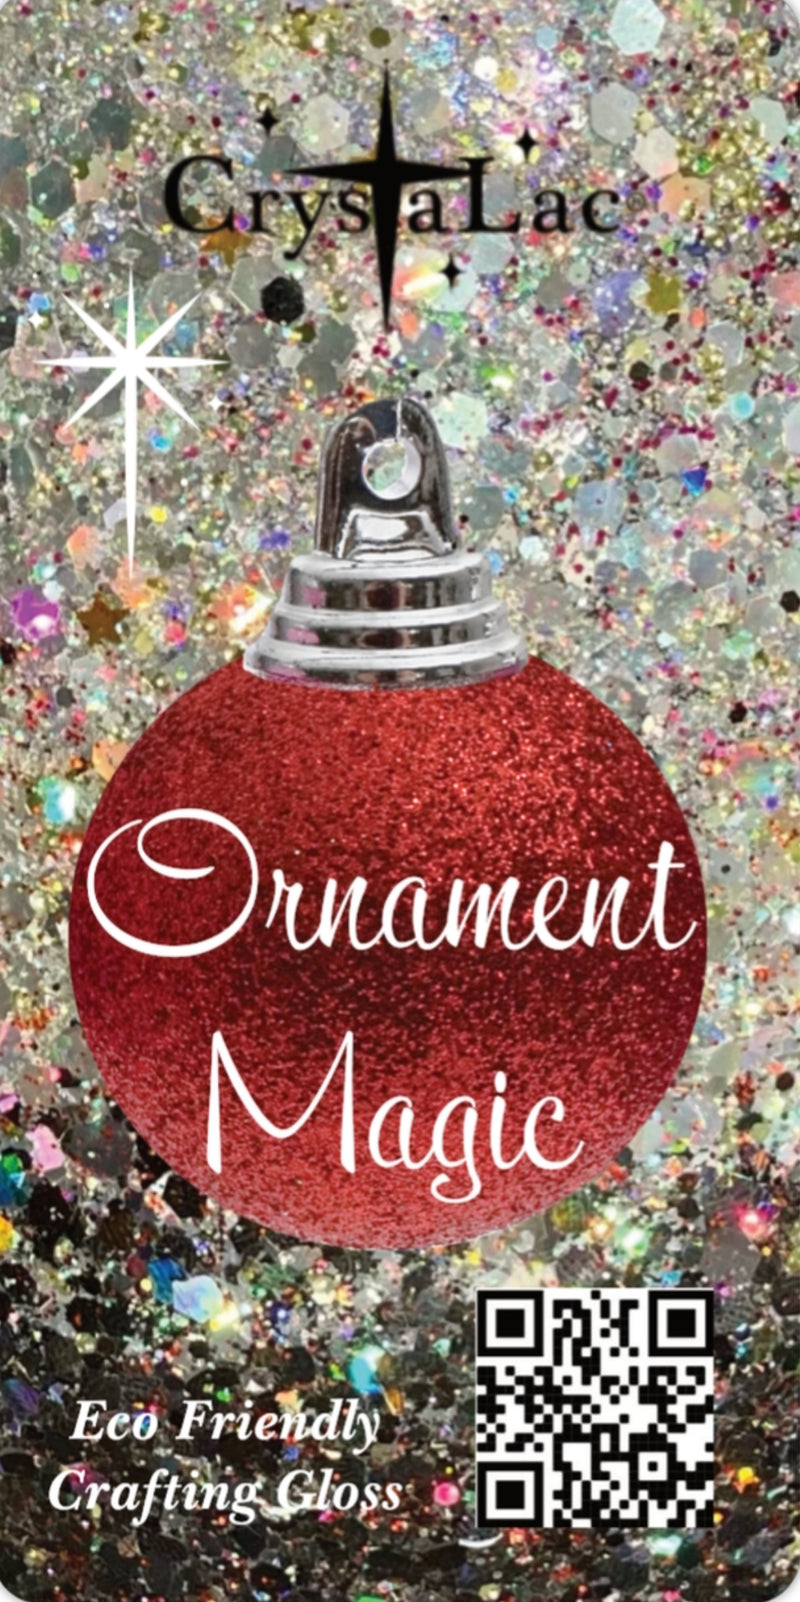 CrystaLac Ornament Magic Eco Friendly Crafting Gloss 12 oz